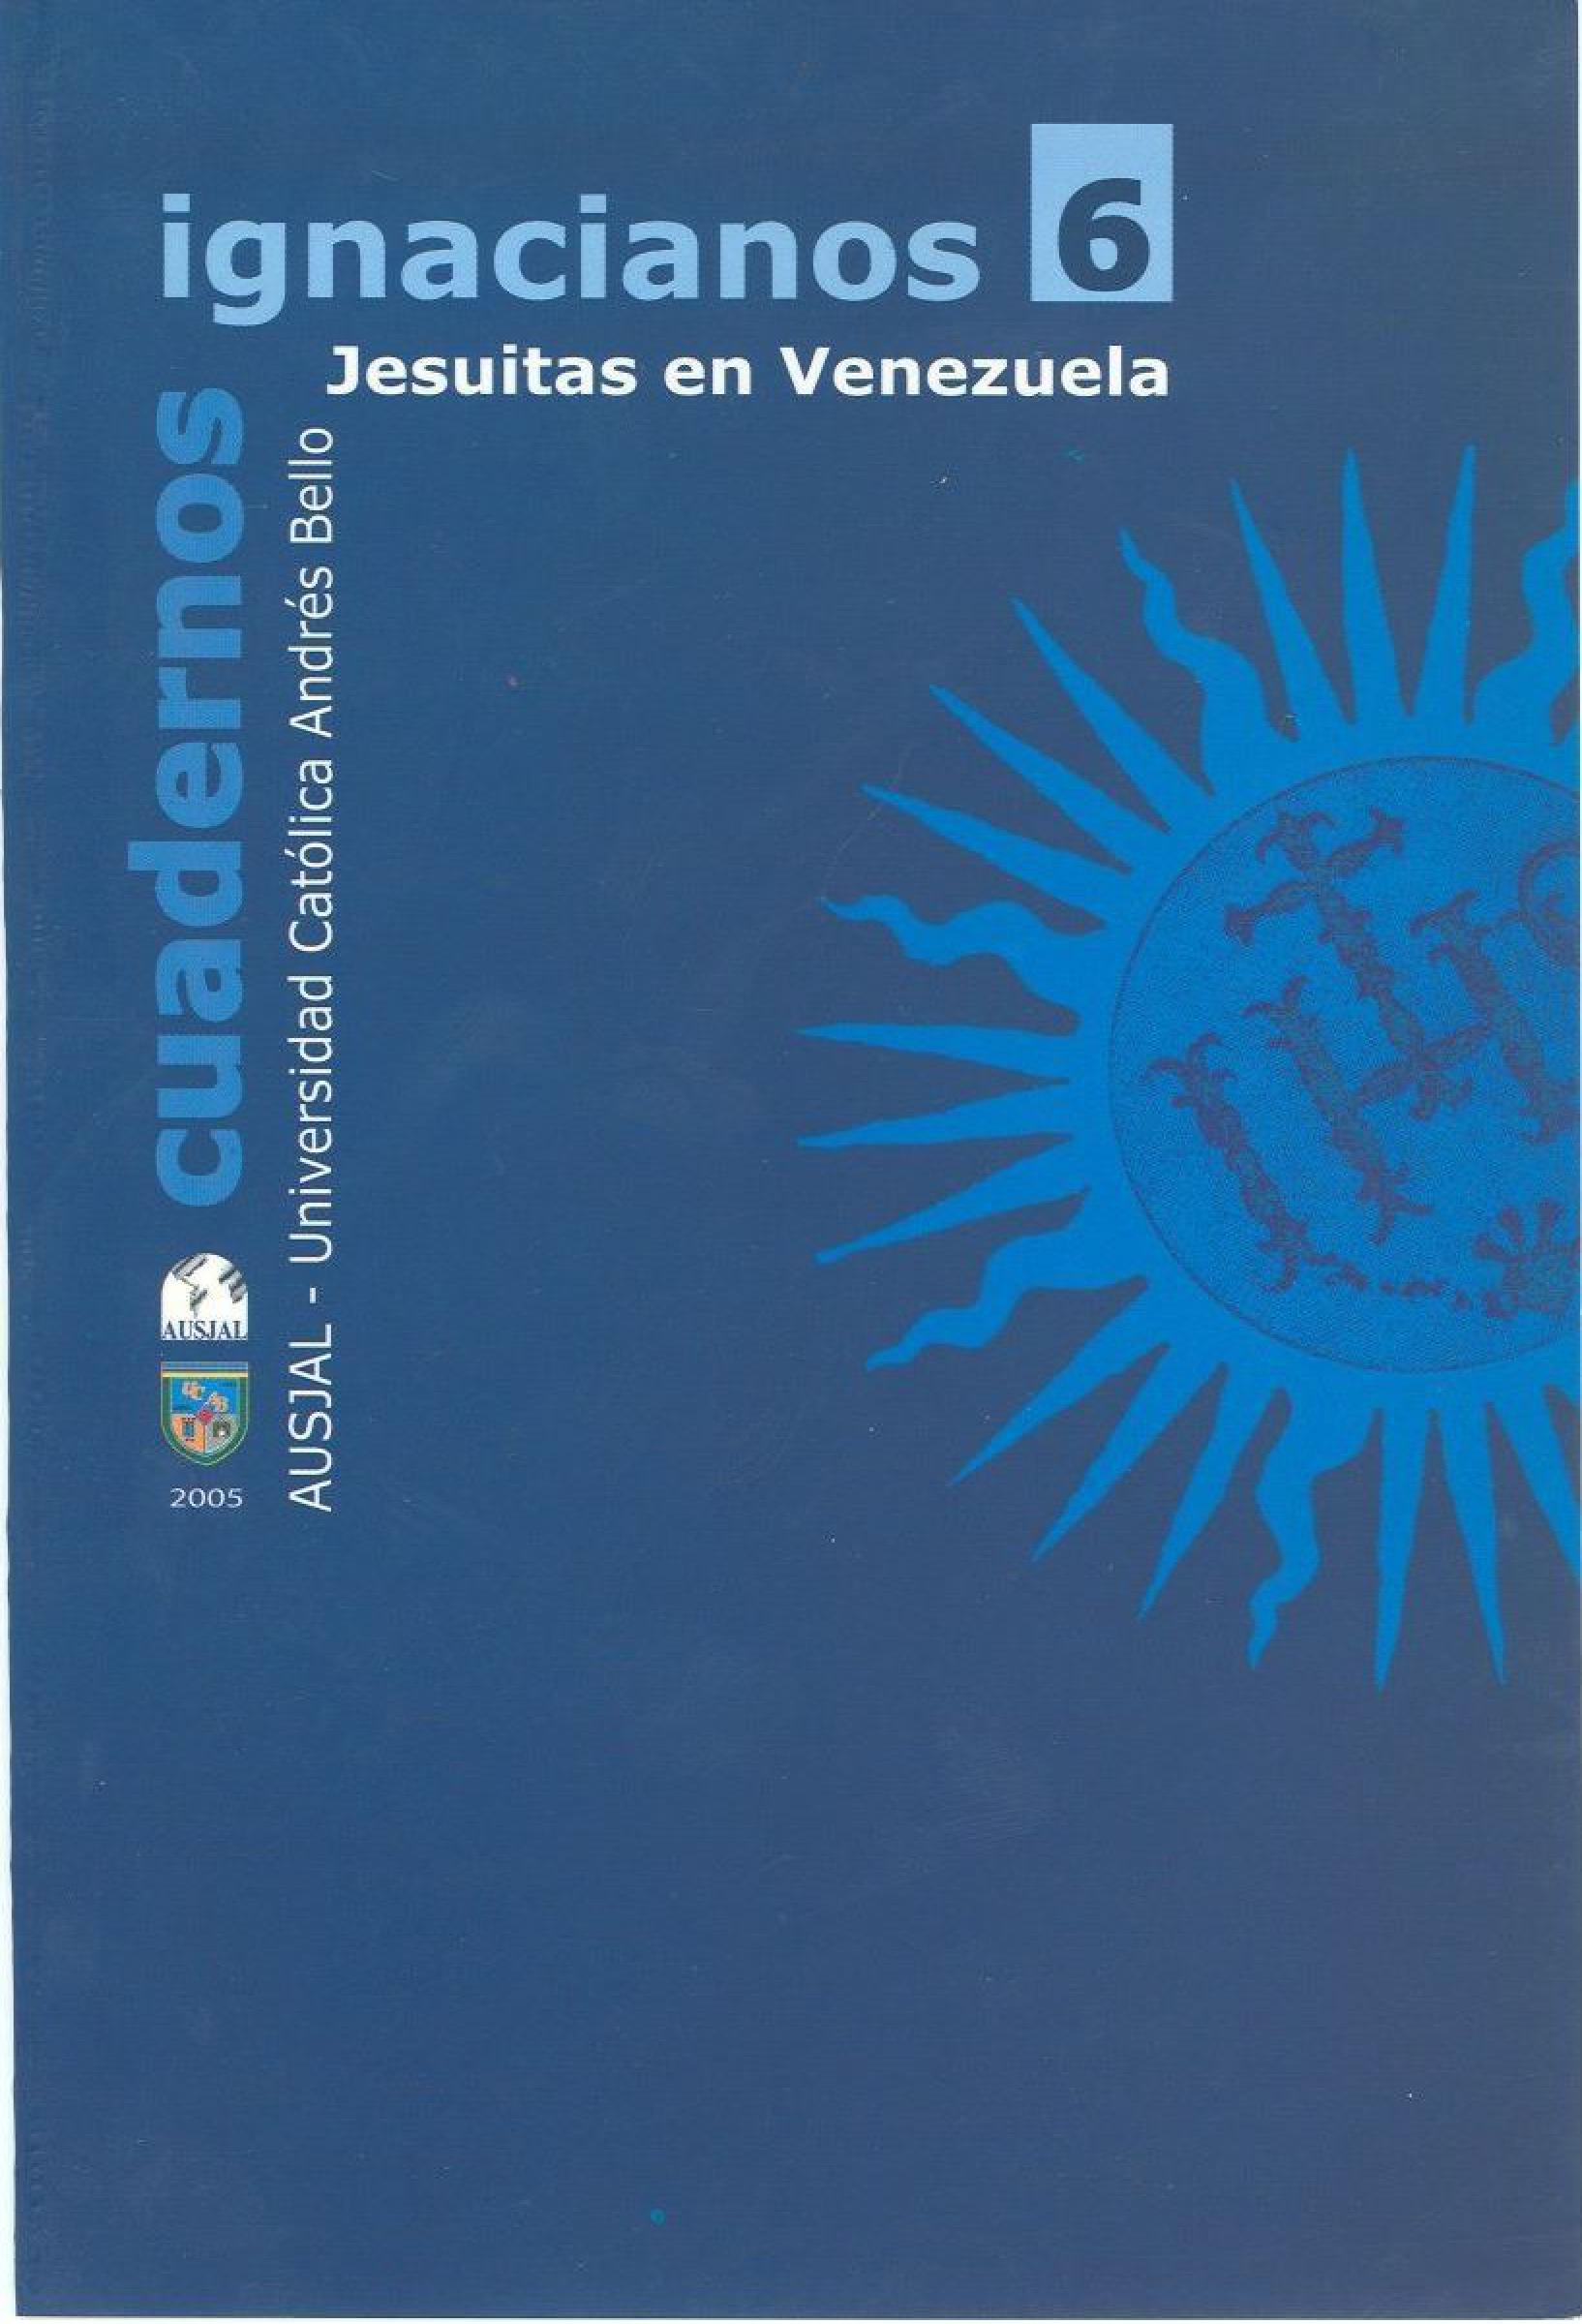                     Ver Núm. 6 (2005): Cuadernos Ignacianos
                